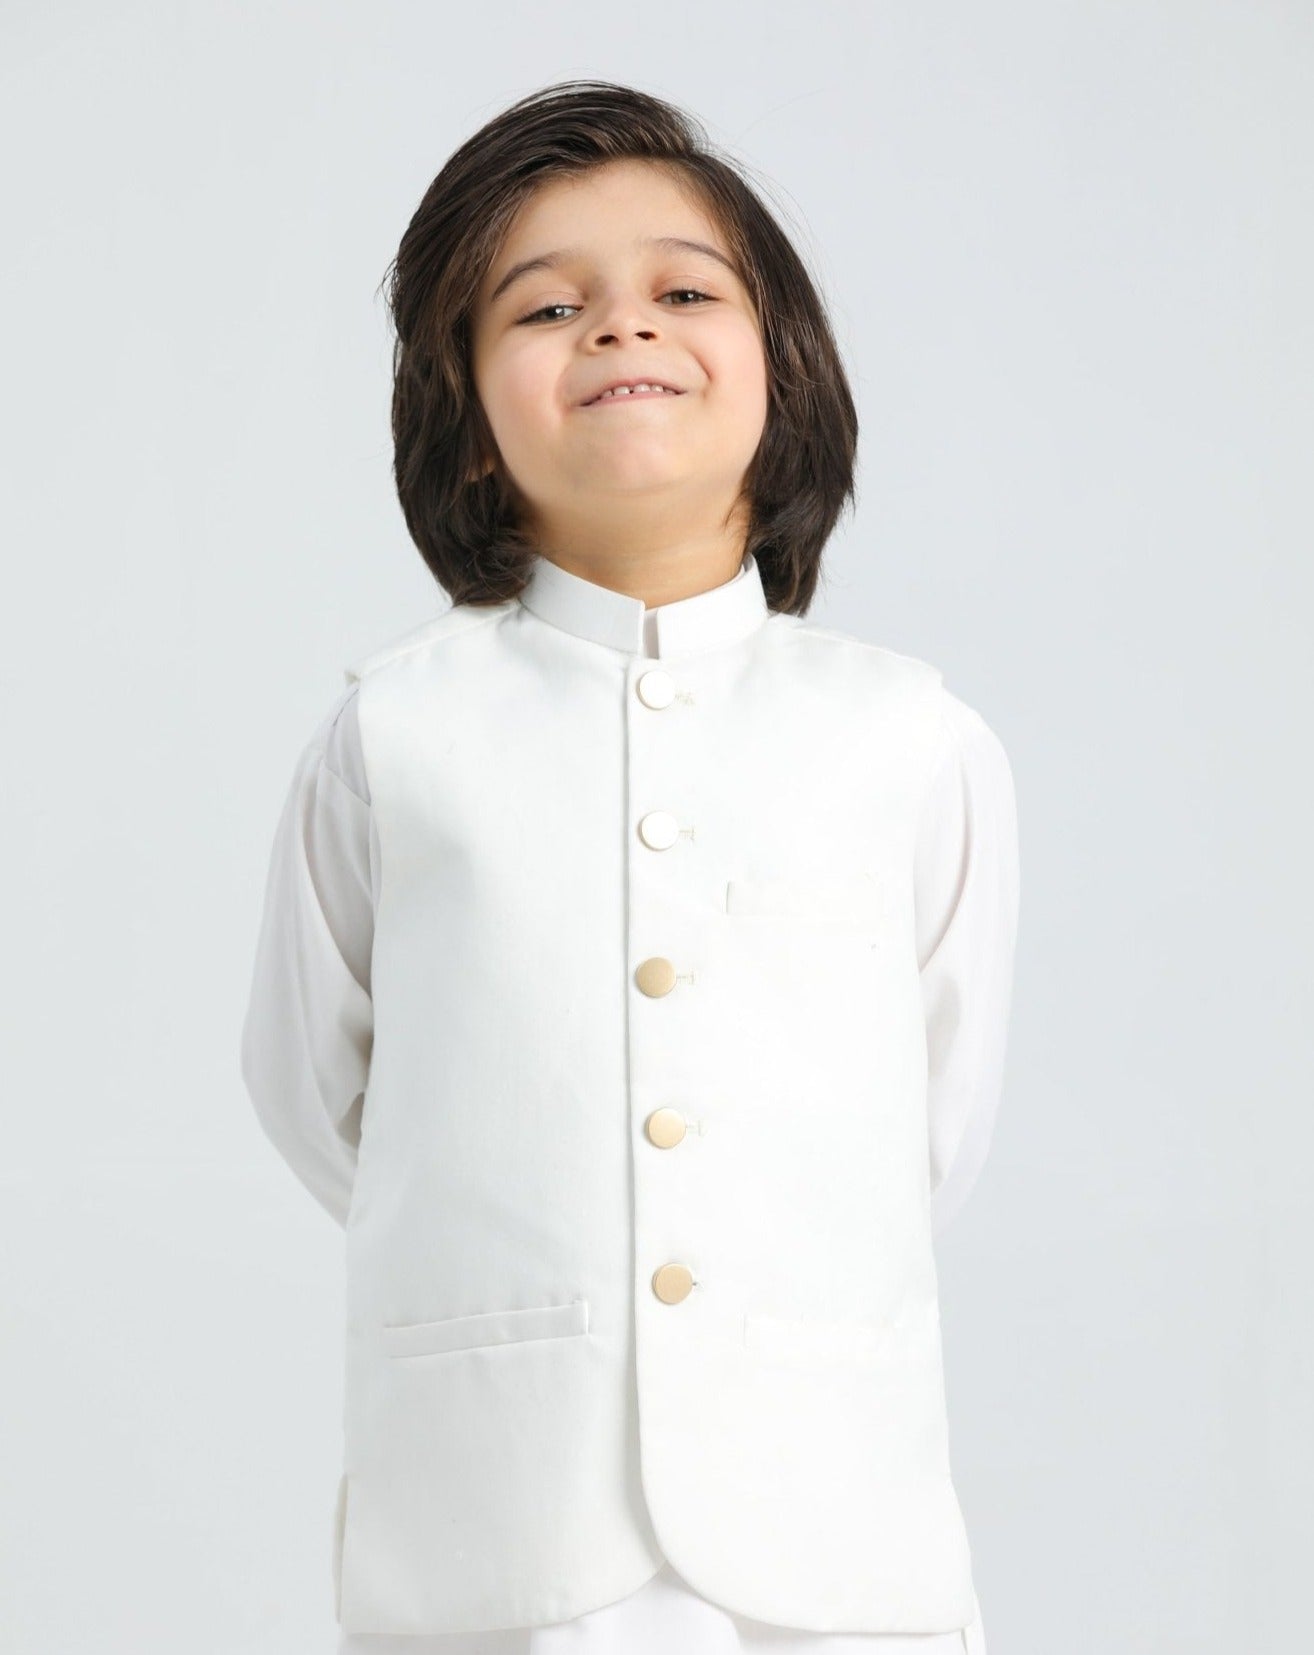 Off White Shalwar Kameez and Waistcoat - 3PC Set - Kids